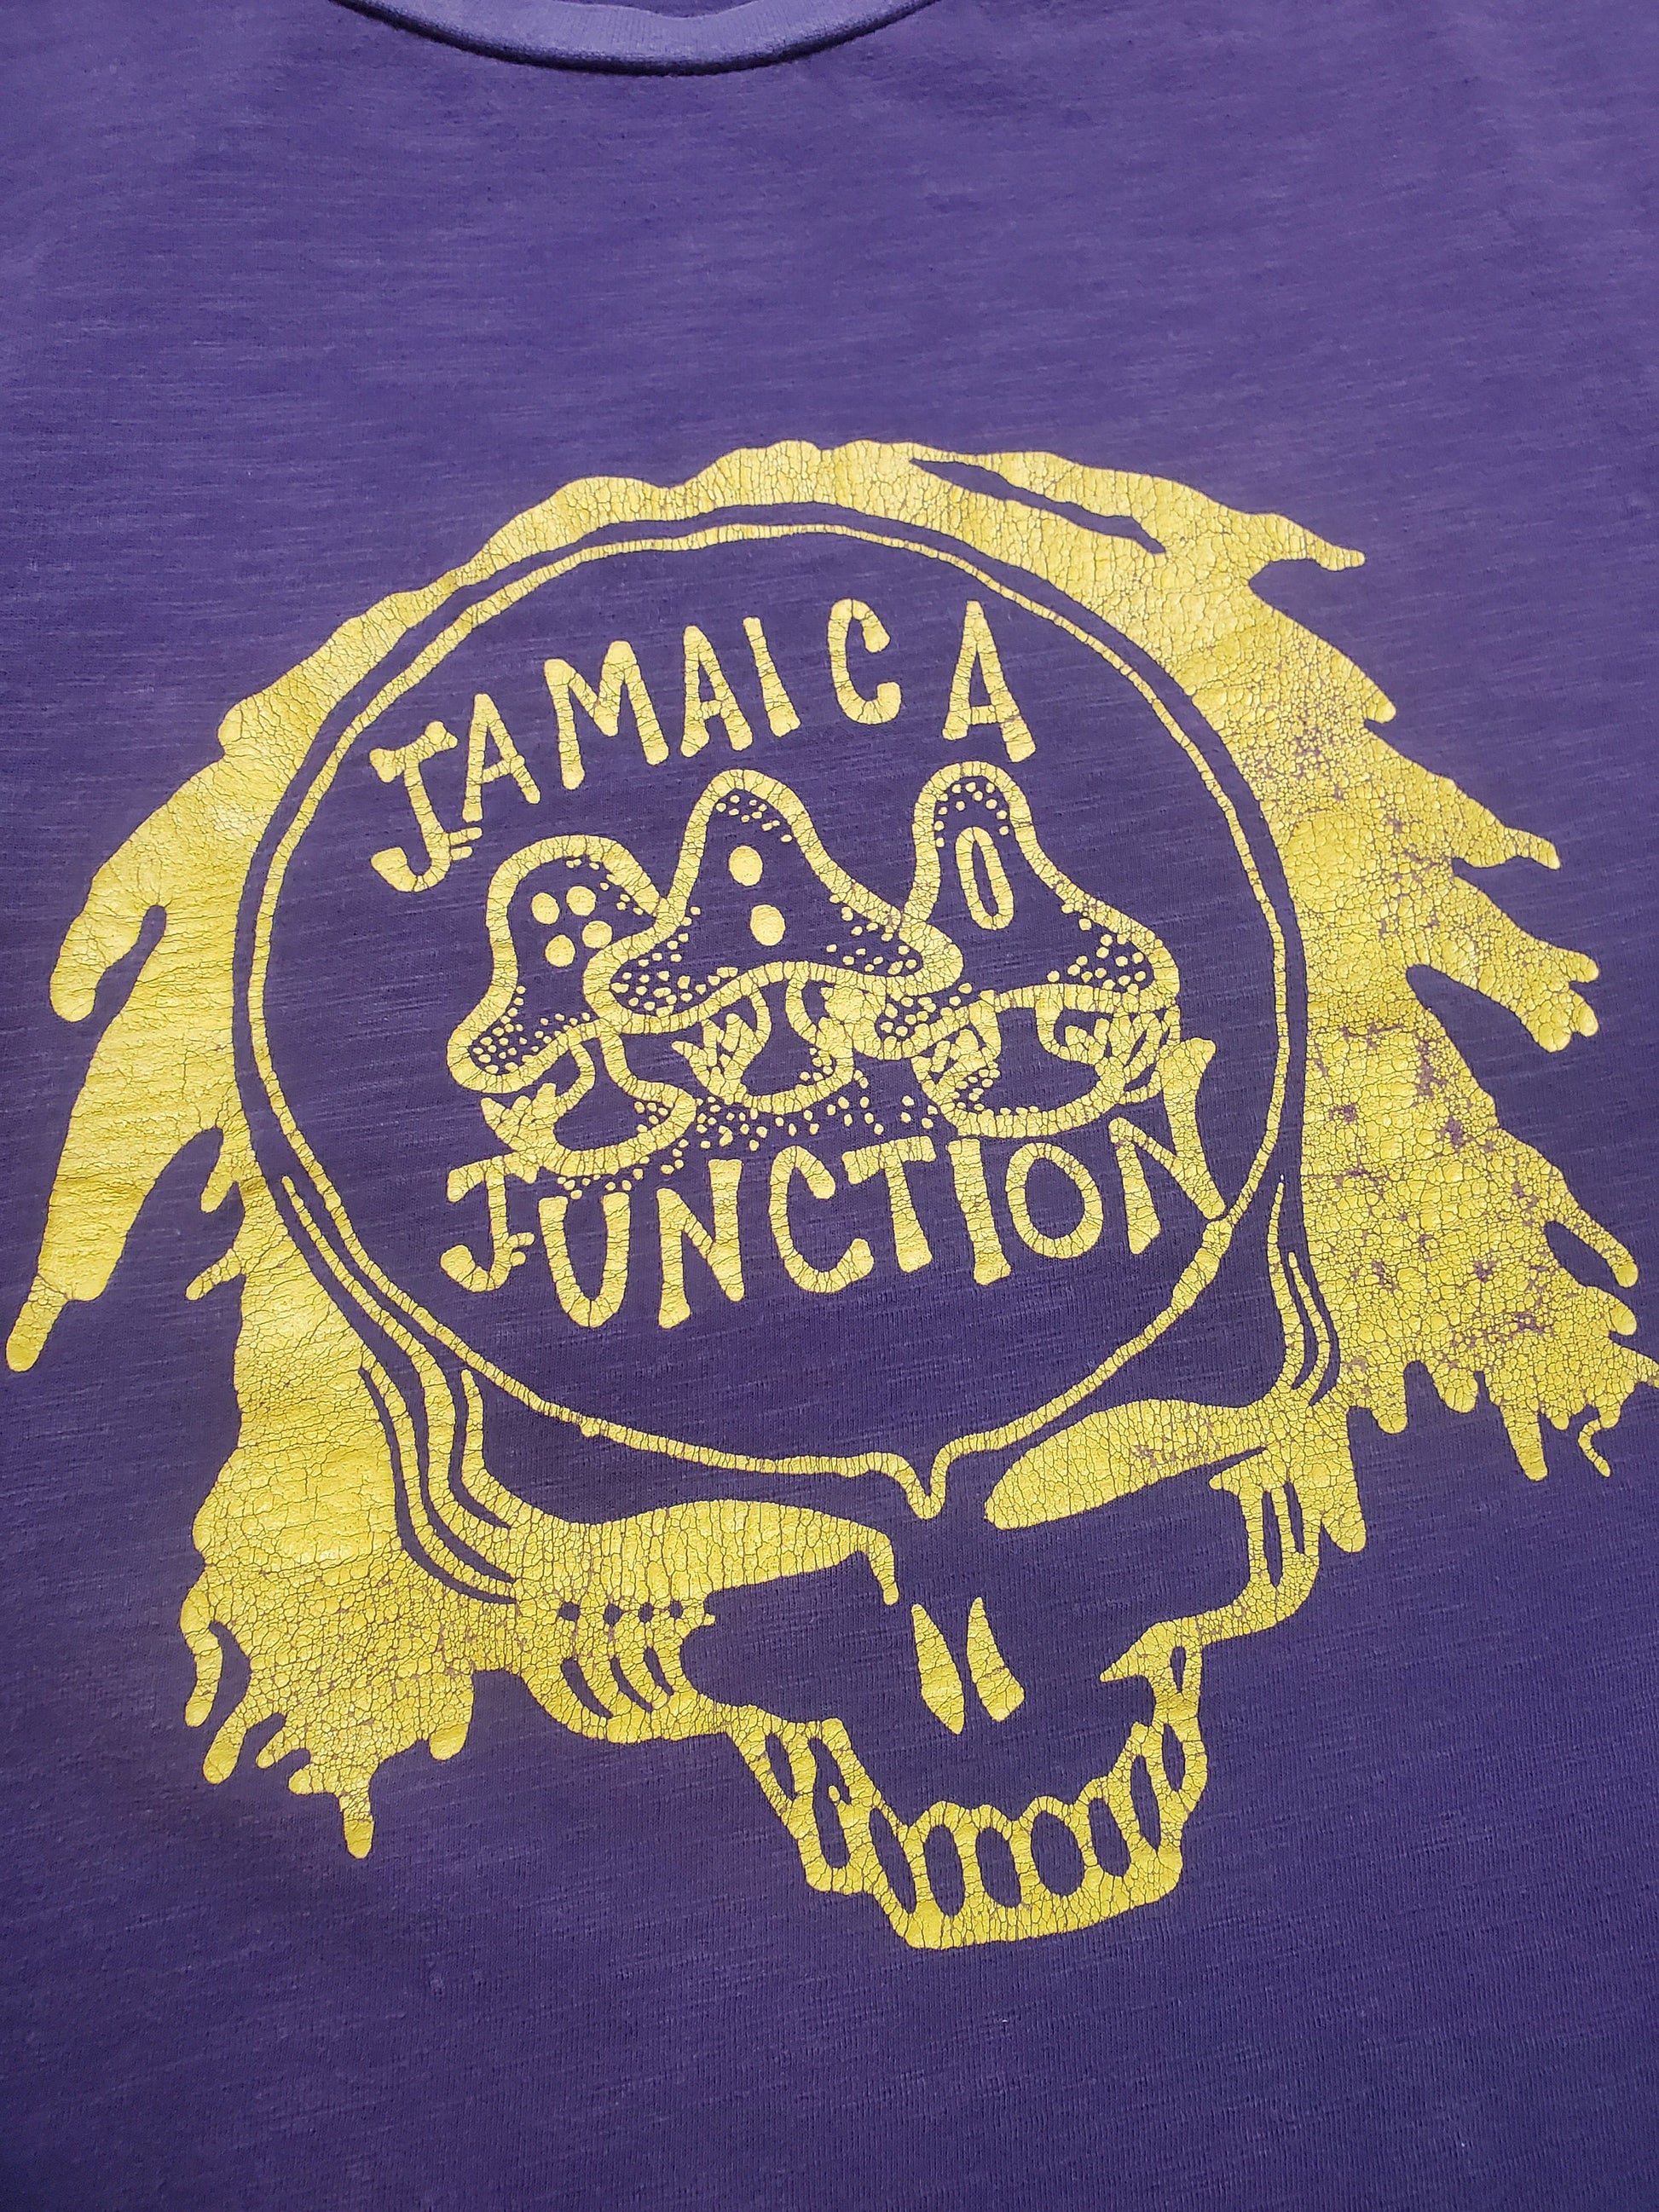 1990s/2000s Grateful Dead Stealie Logo Jamaica Junction Lot T-Shirt Cutoff Tanktop Size XL